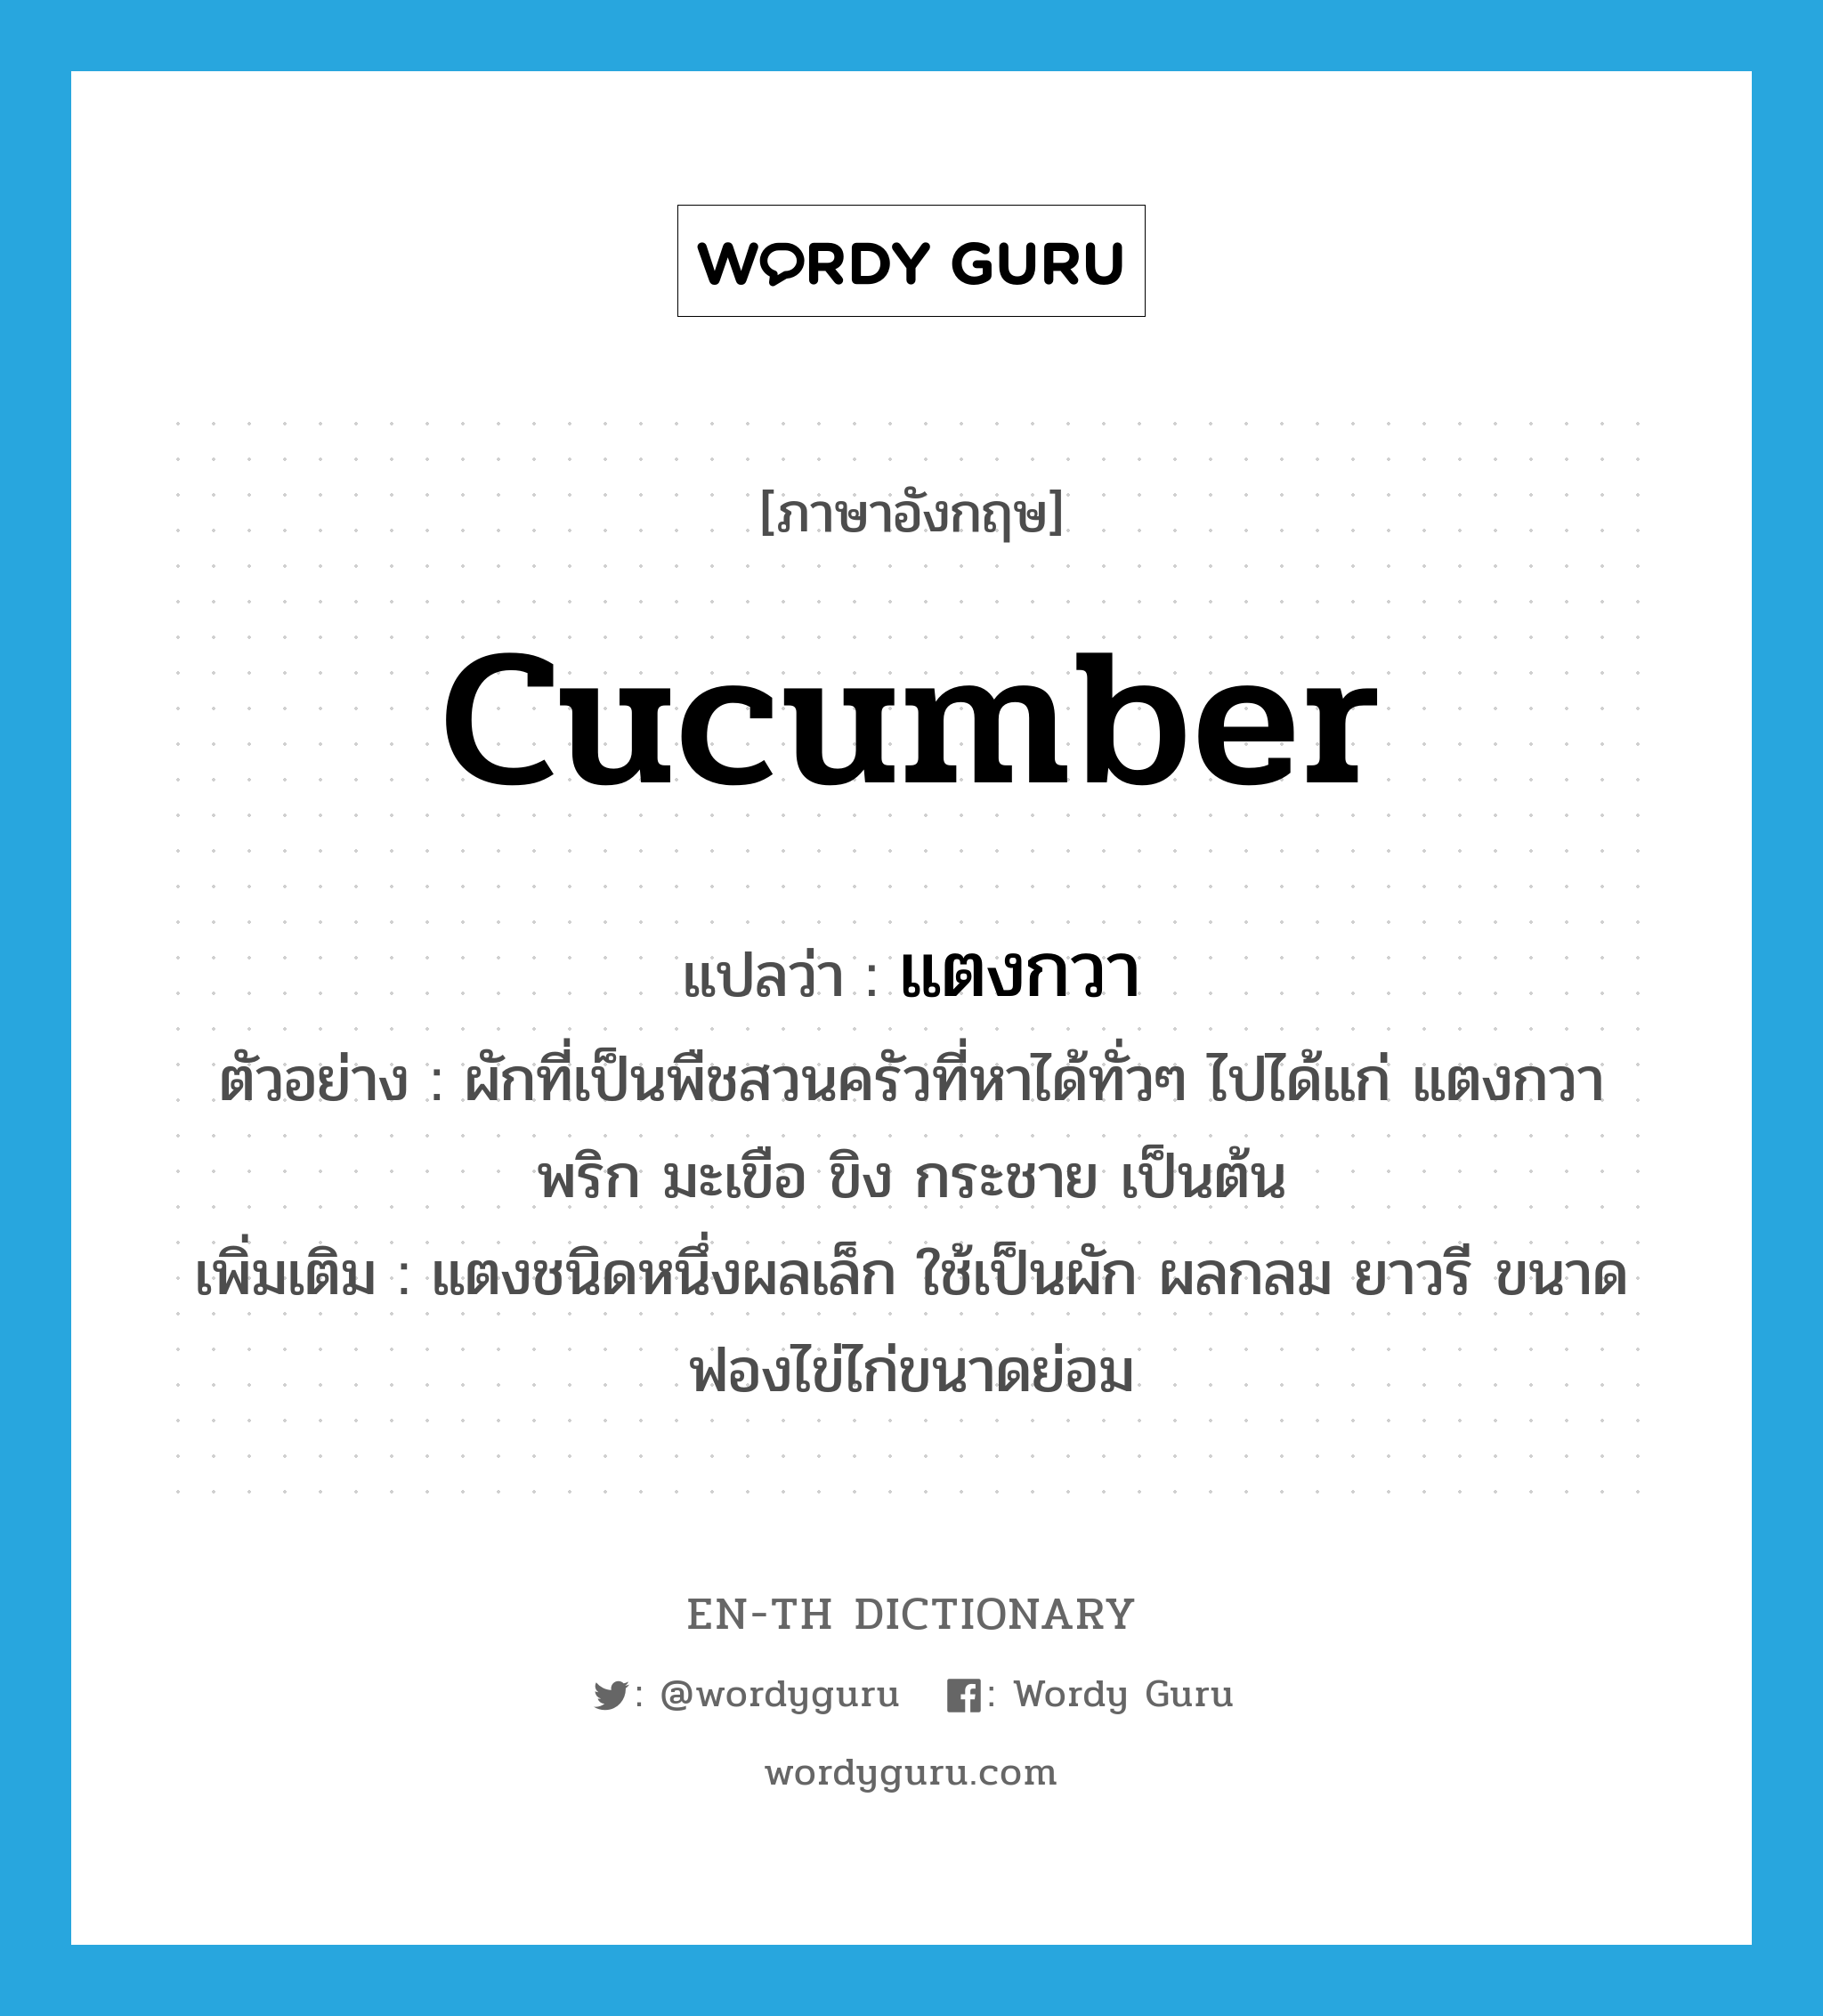 cucumber แปลว่า?, คำศัพท์ภาษาอังกฤษ cucumber แปลว่า แตงกวา ประเภท N ตัวอย่าง ผักที่เป็นพืชสวนครัวที่หาได้ทั่วๆ ไปได้แก่ แตงกวา พริก มะเขือ ขิง กระชาย เป็นต้น เพิ่มเติม แตงชนิดหนึ่งผลเล็ก ใช้เป็นผัก ผลกลม ยาวรี ขนาดฟองไข่ไก่ขนาดย่อม หมวด N